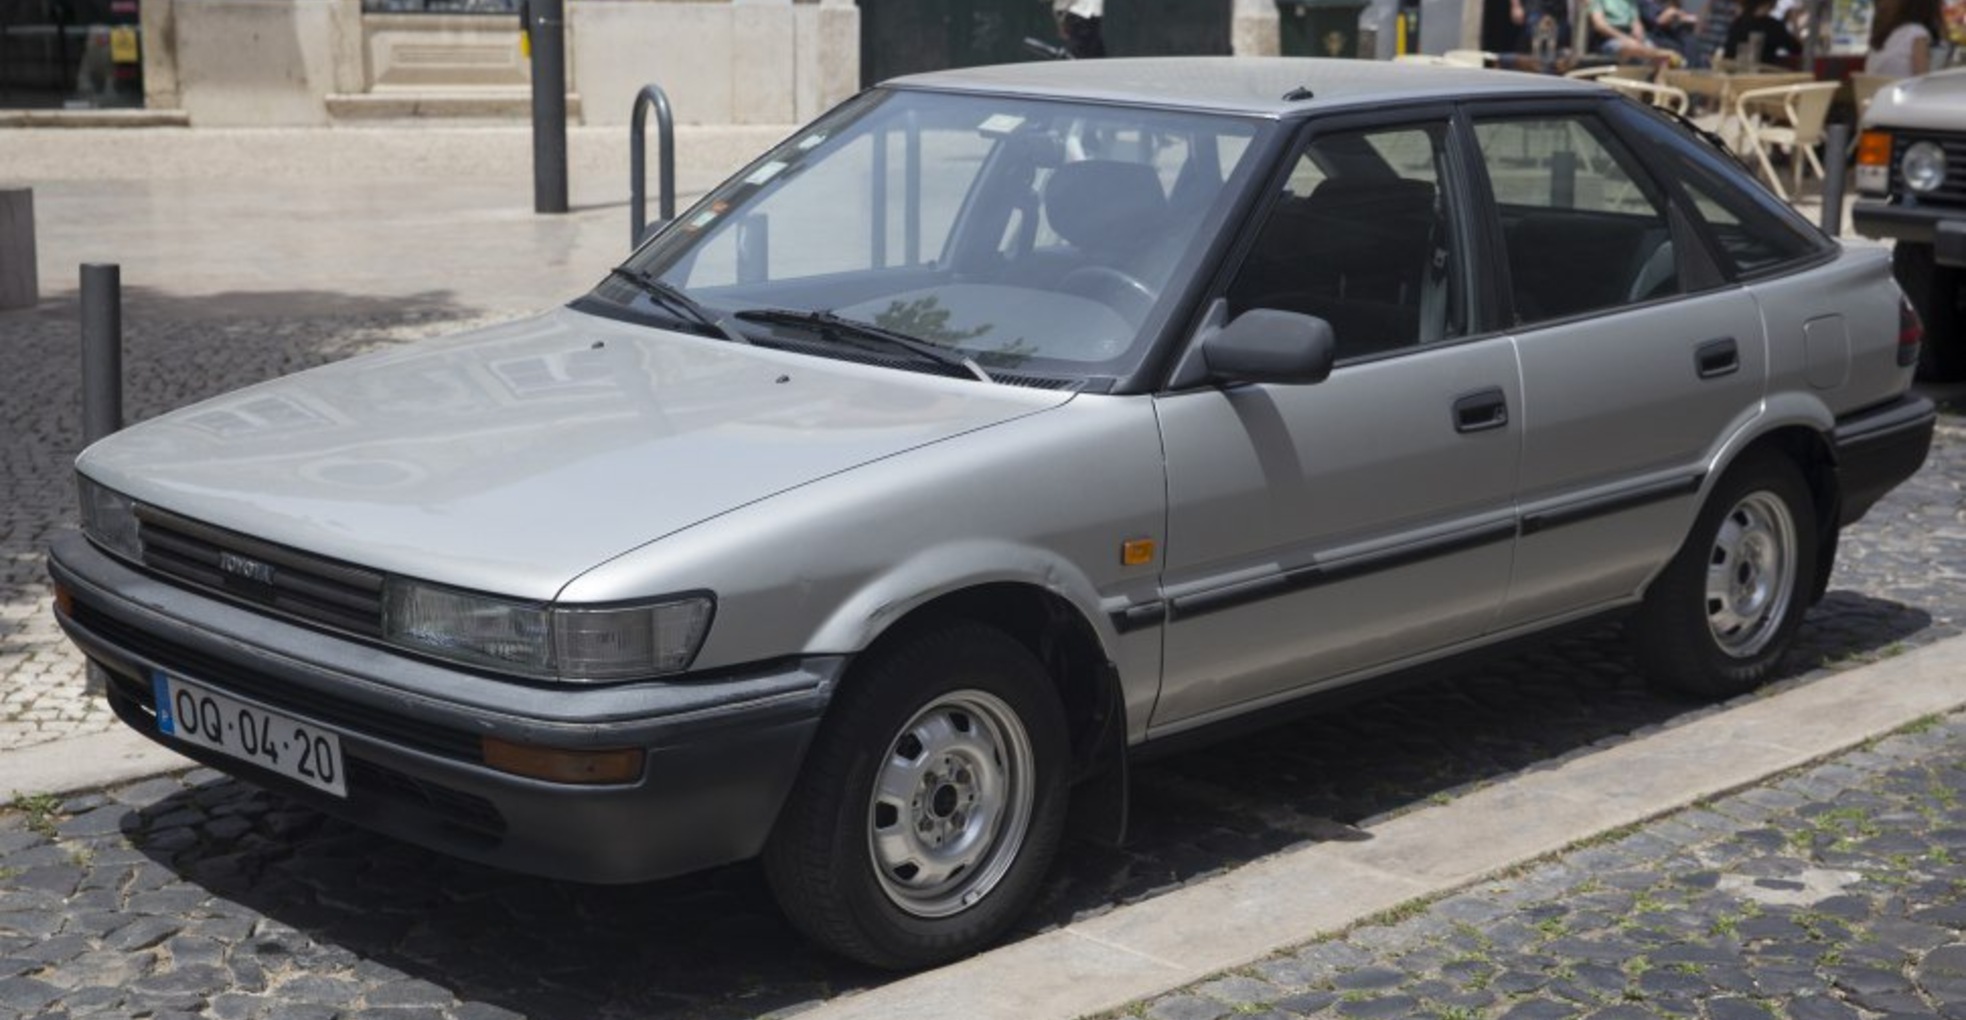 Toyota Corolla Compact VI (E90) 1.6 (AE92) (90 Hp) 1987, 1988, 1989, 1990, 1991, 1992 